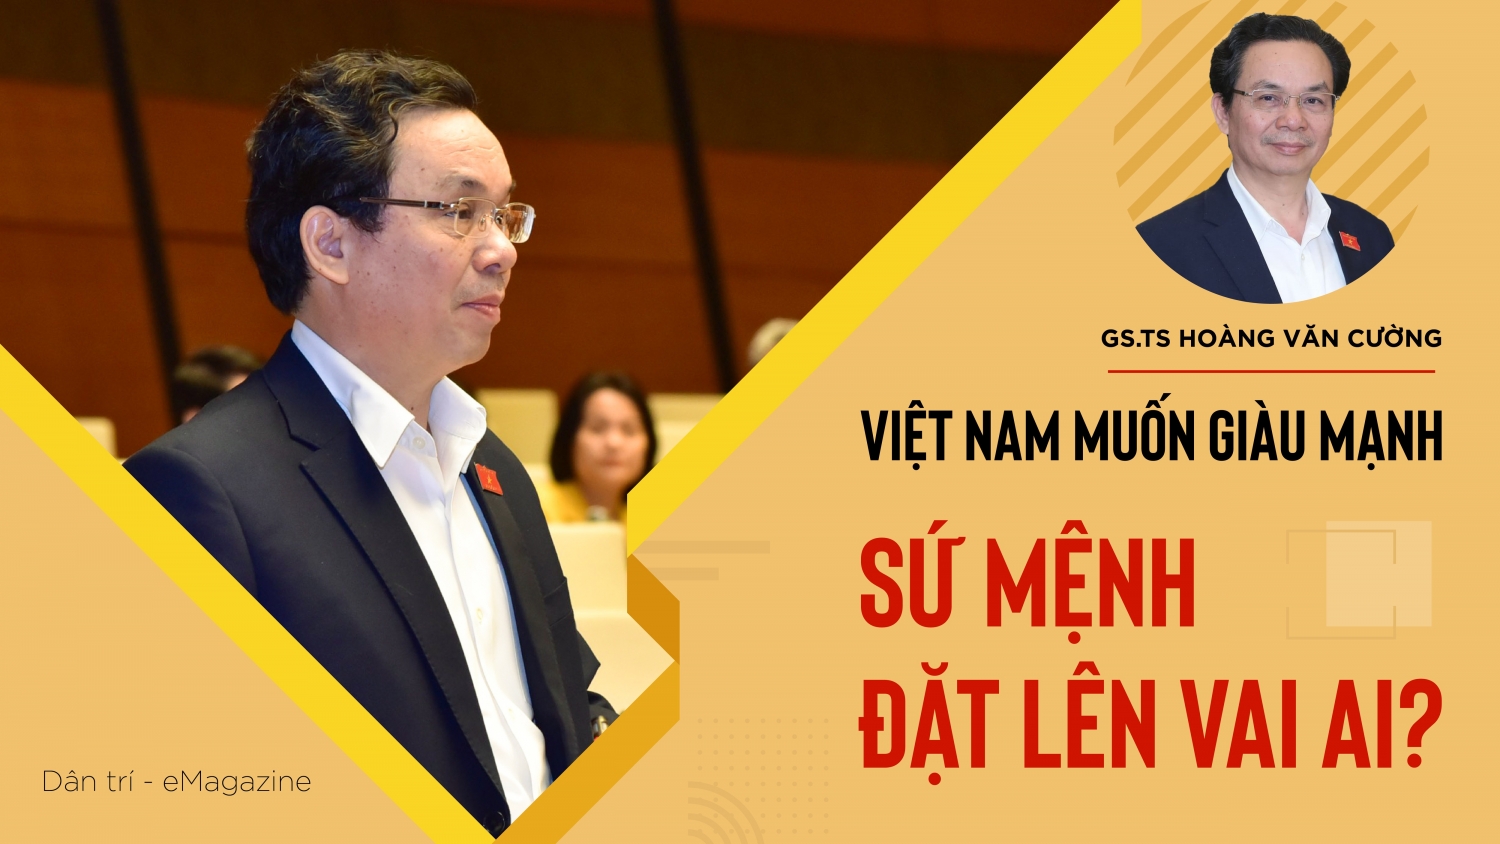 GS.TS Hoàng Văn Cường: Việt Nam muốn giàu mạnh, sứ mệnh đặt lên vai ai?